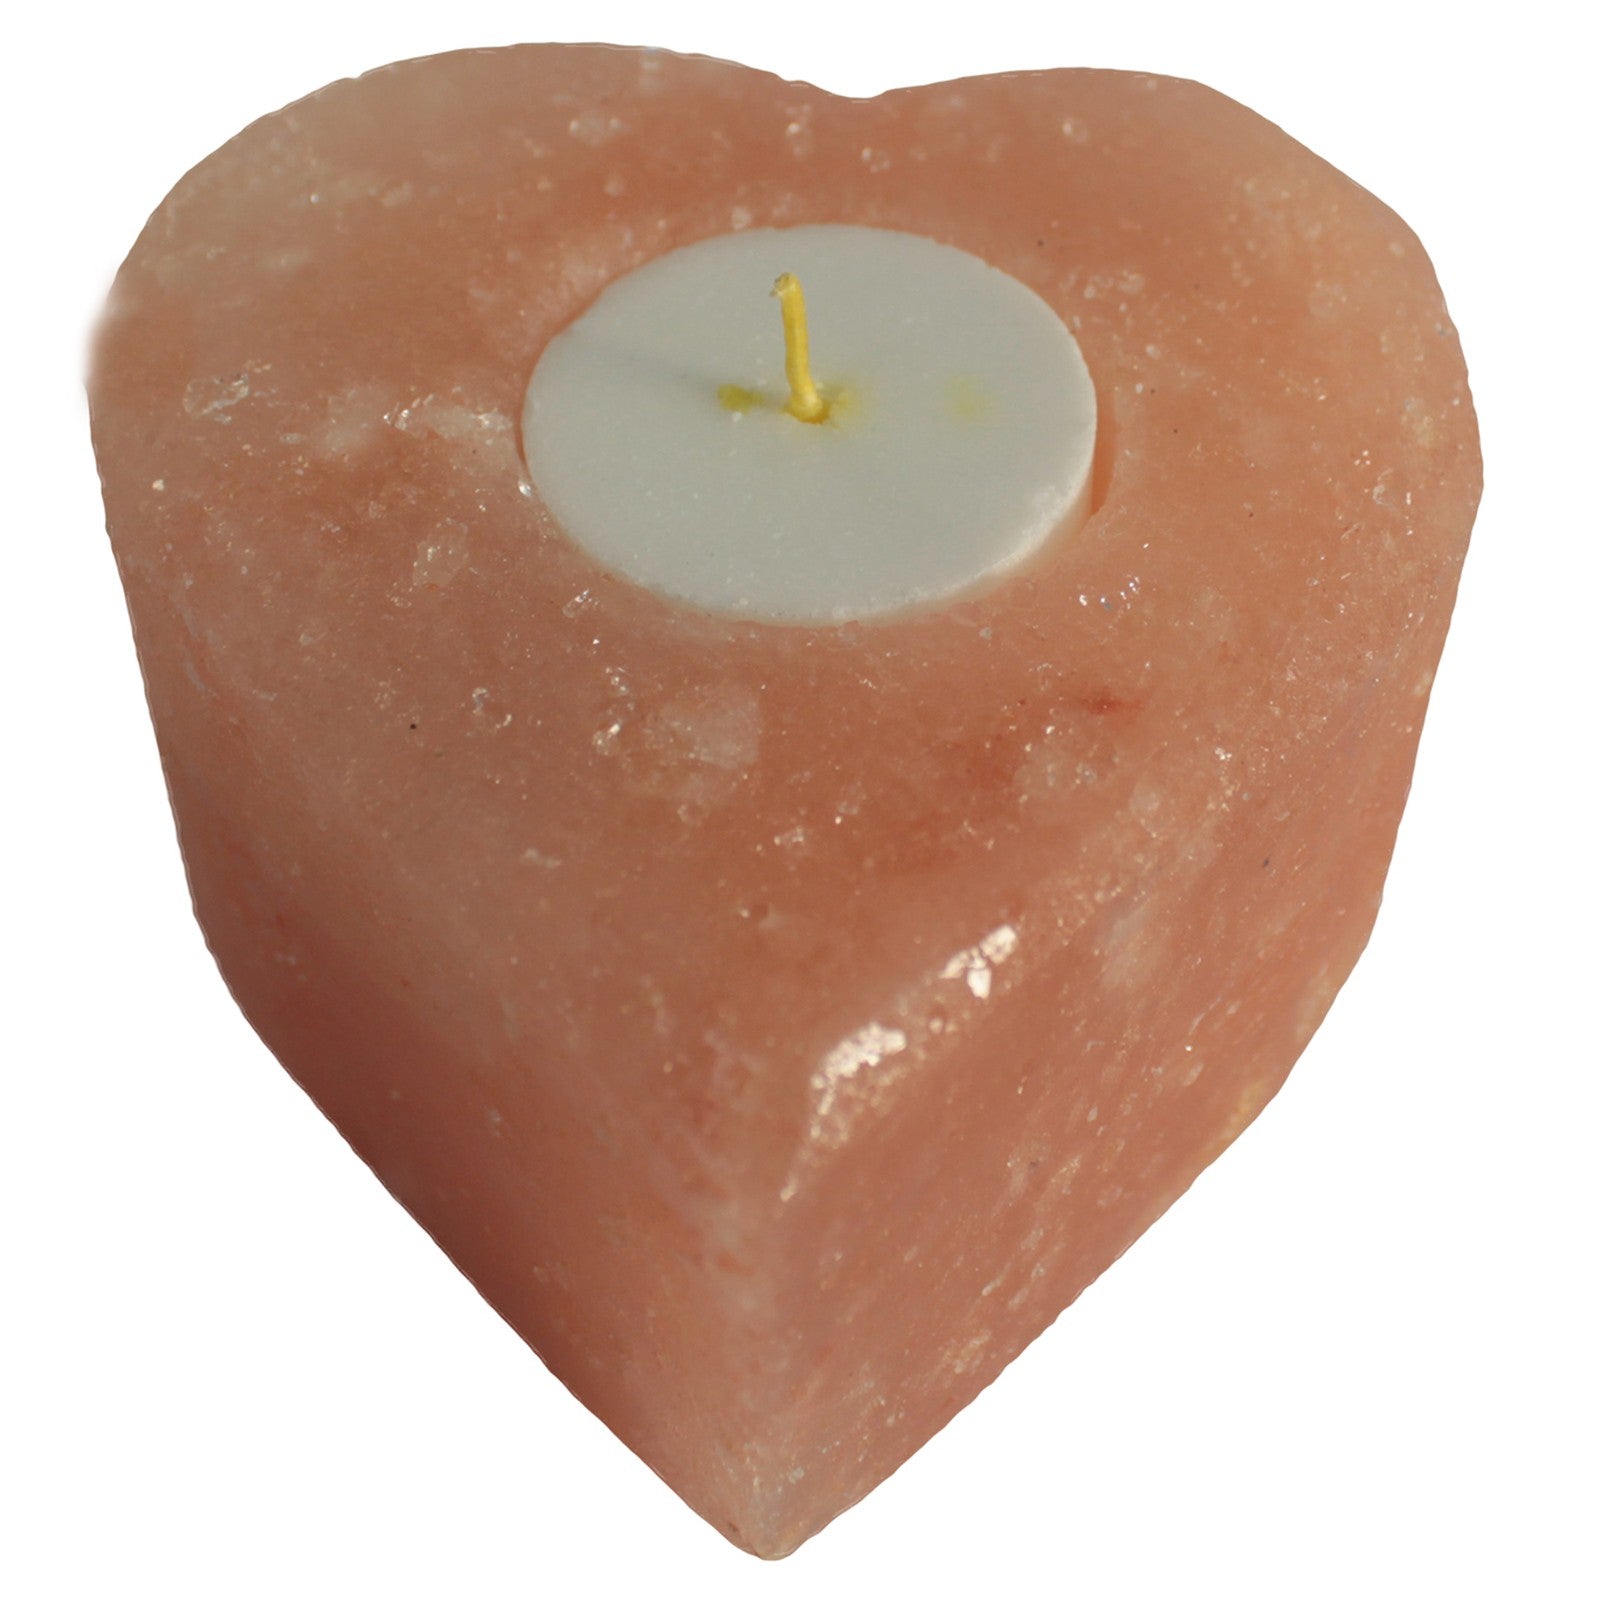 View Salt Candle Holder Med Heart information